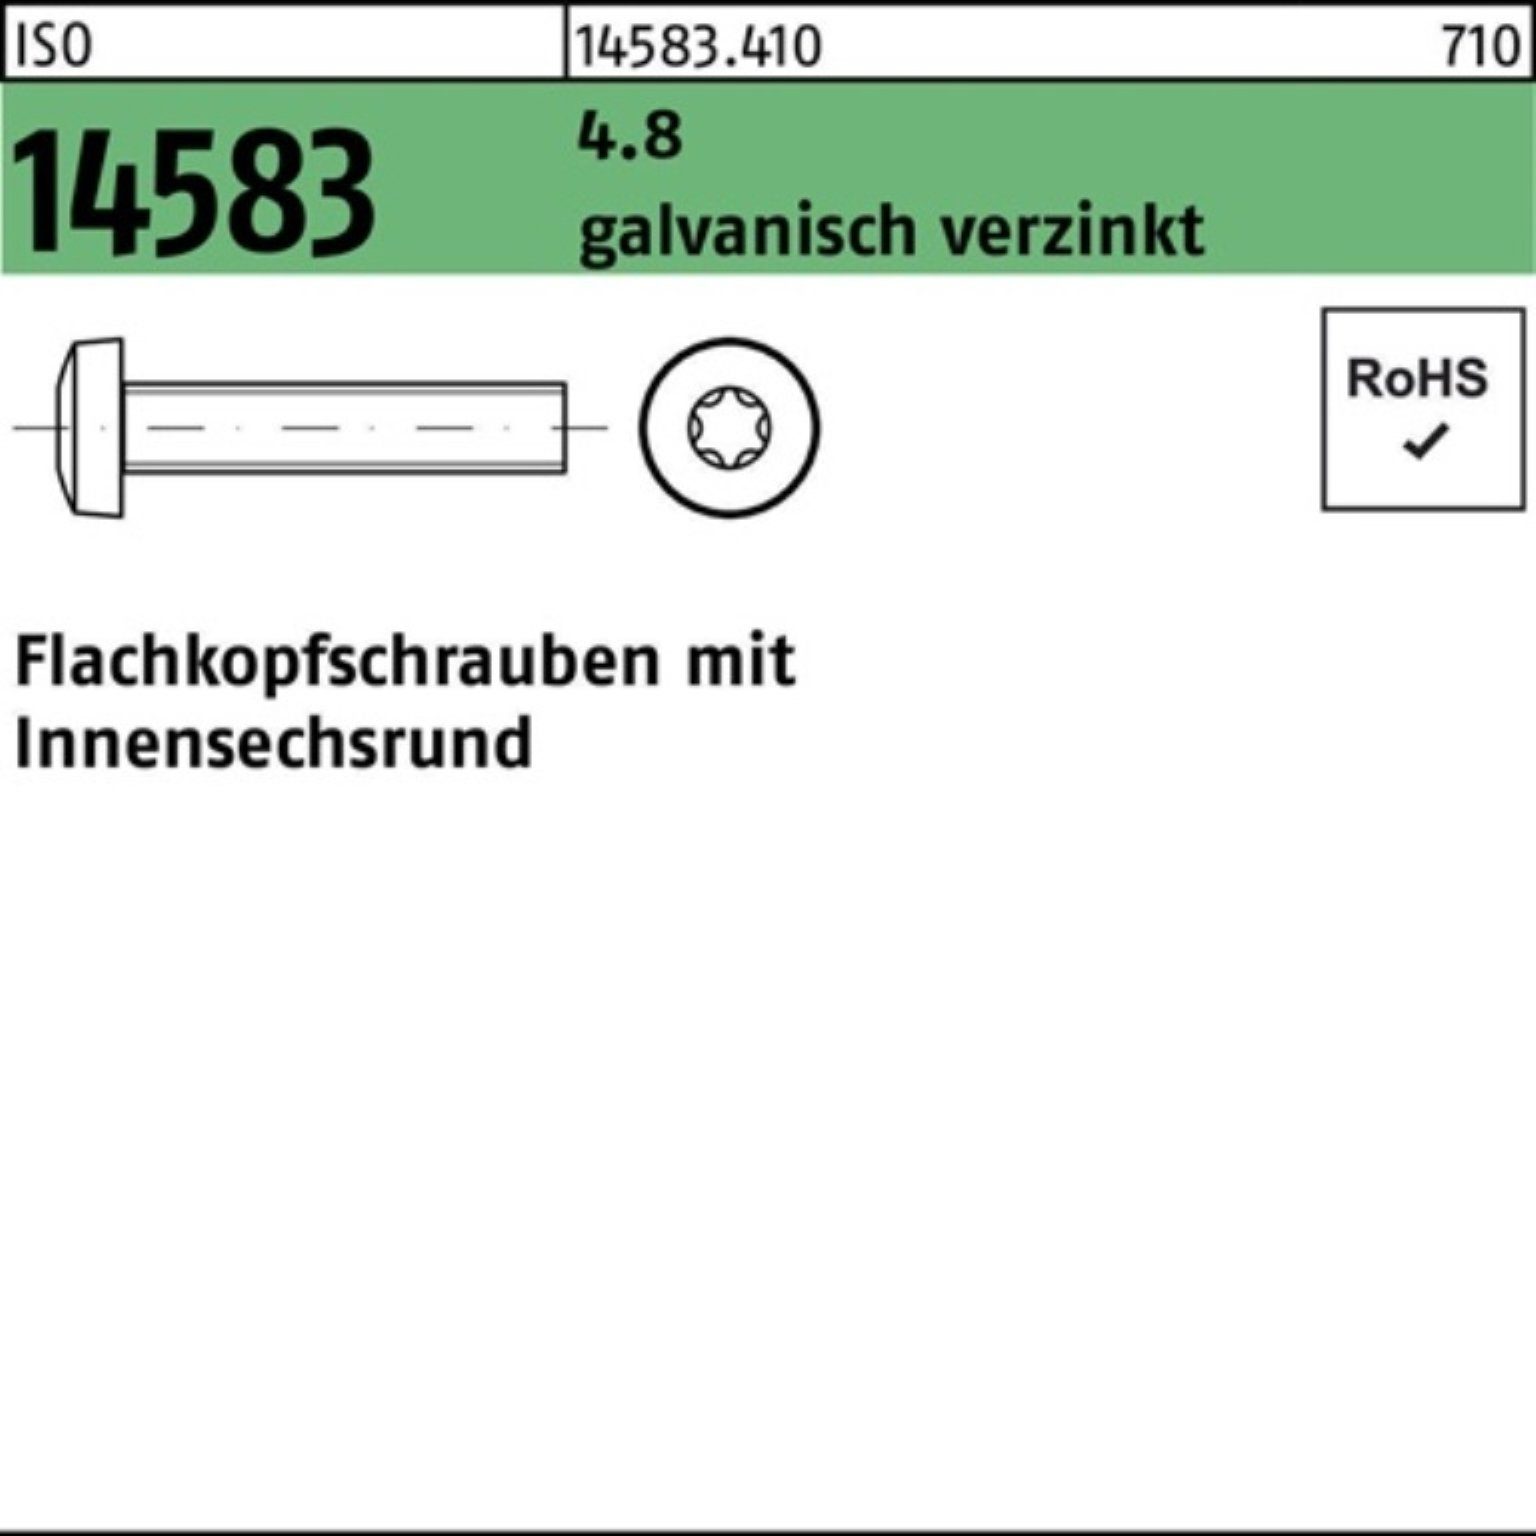 Schraube 200St. galv.verz. Reyher Pack ISR Flachkopfschraube 200er M3x40 14583 ISO 4.8